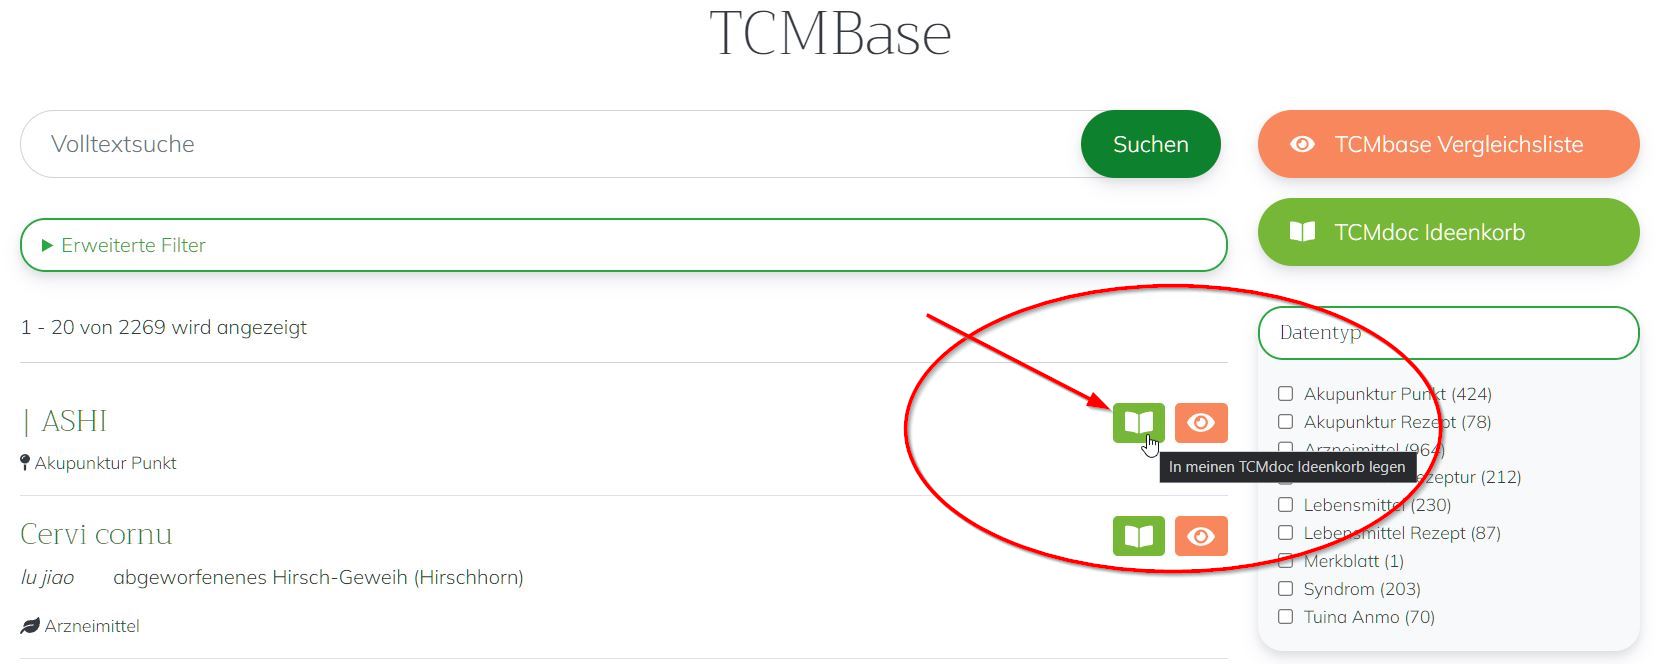 TCMbase: Zu Ideenkorb hinzufügen